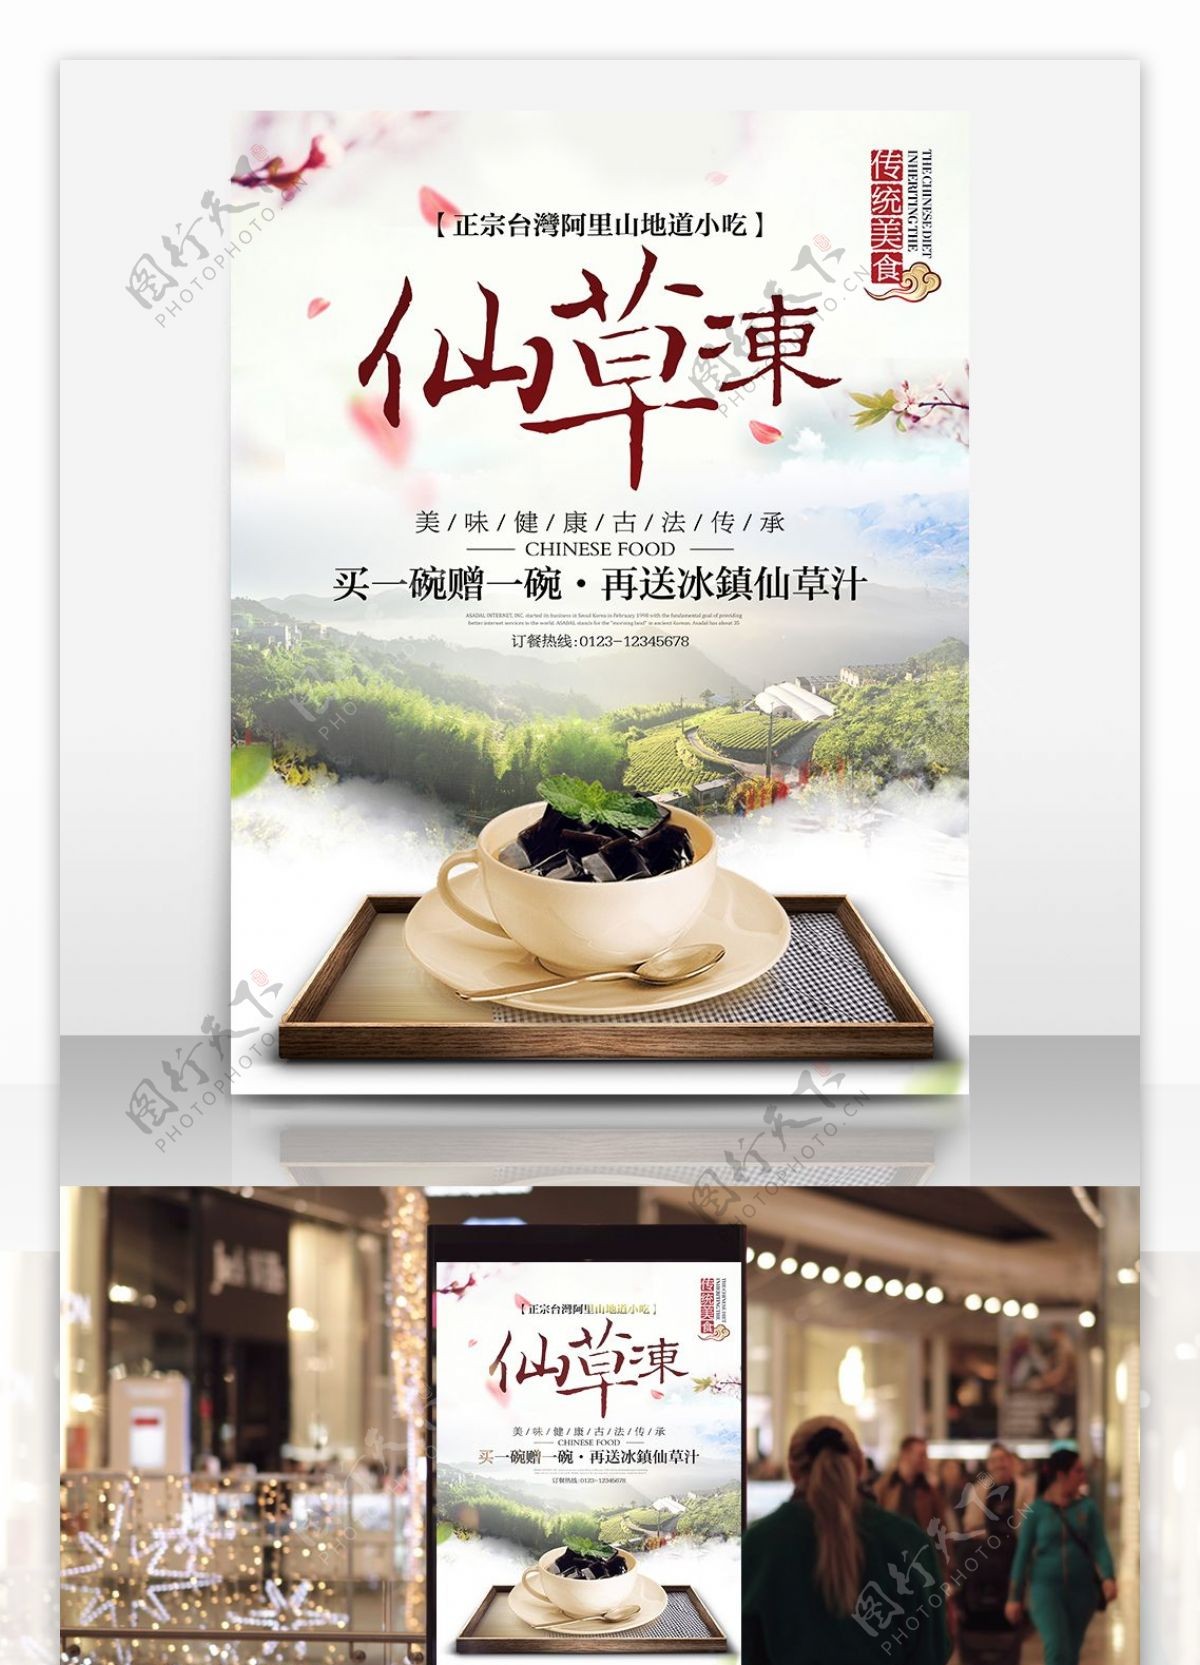 台湾美食仙草冻宣传海报